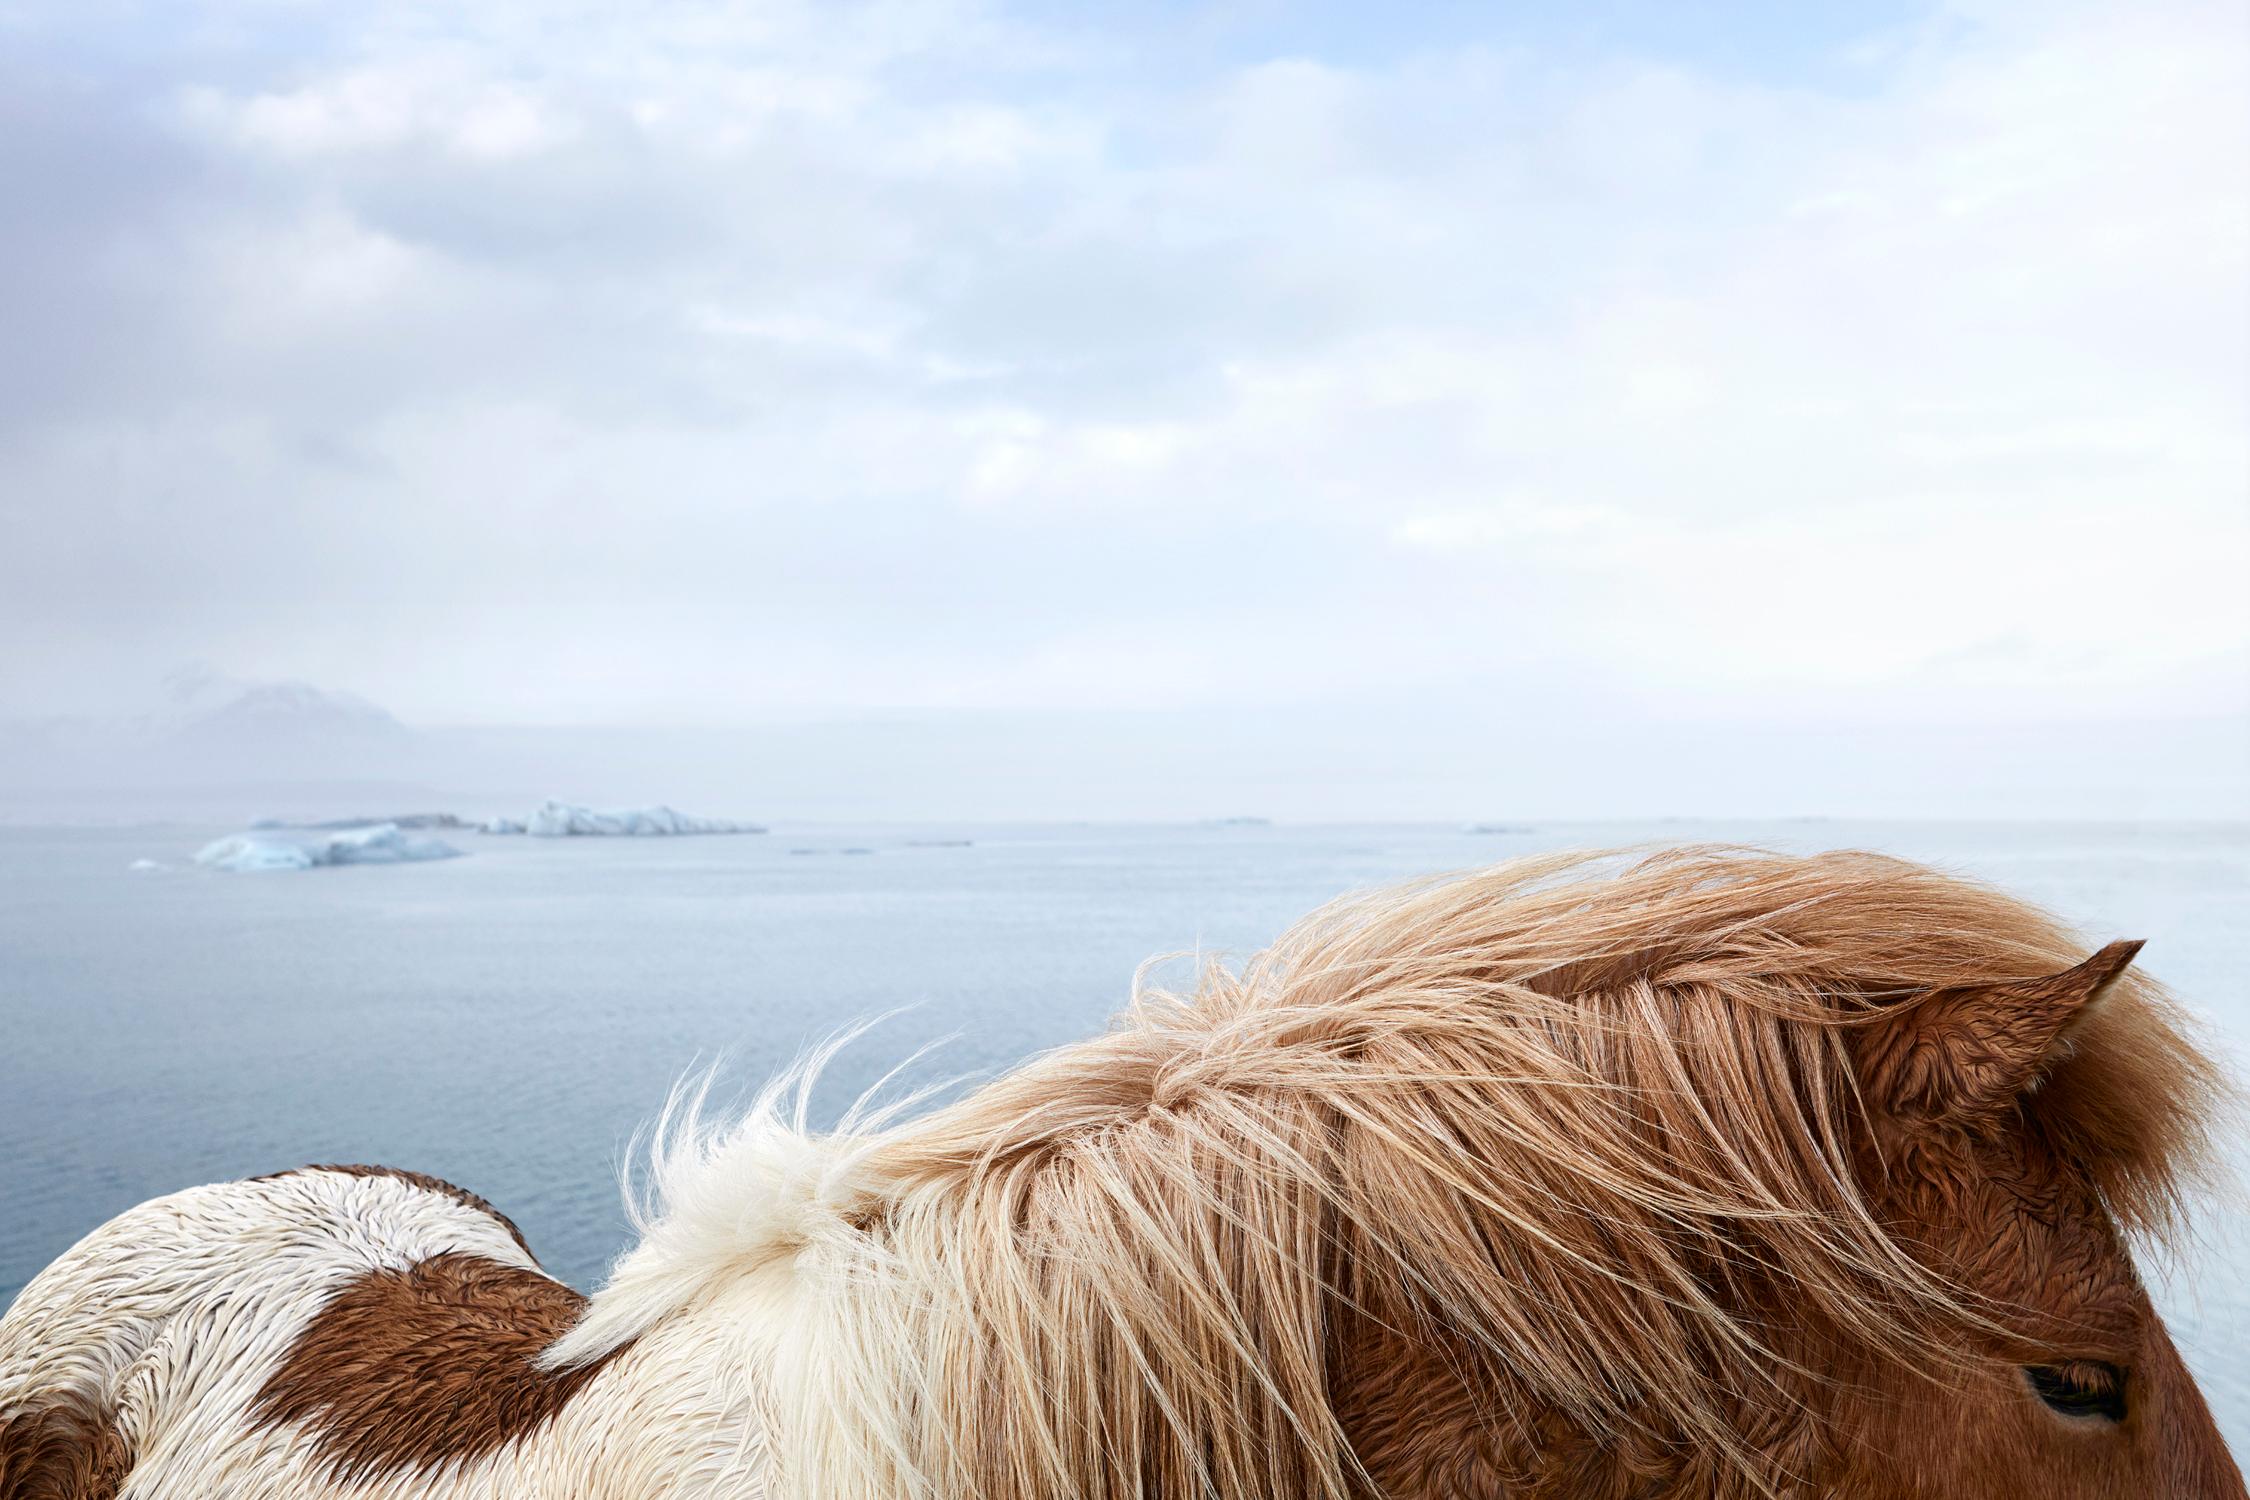 Drew Doggett Color Photograph – Buntes isländisches Pferd vor dem surrealen Hintergrund von Gletscherwasser und Eis